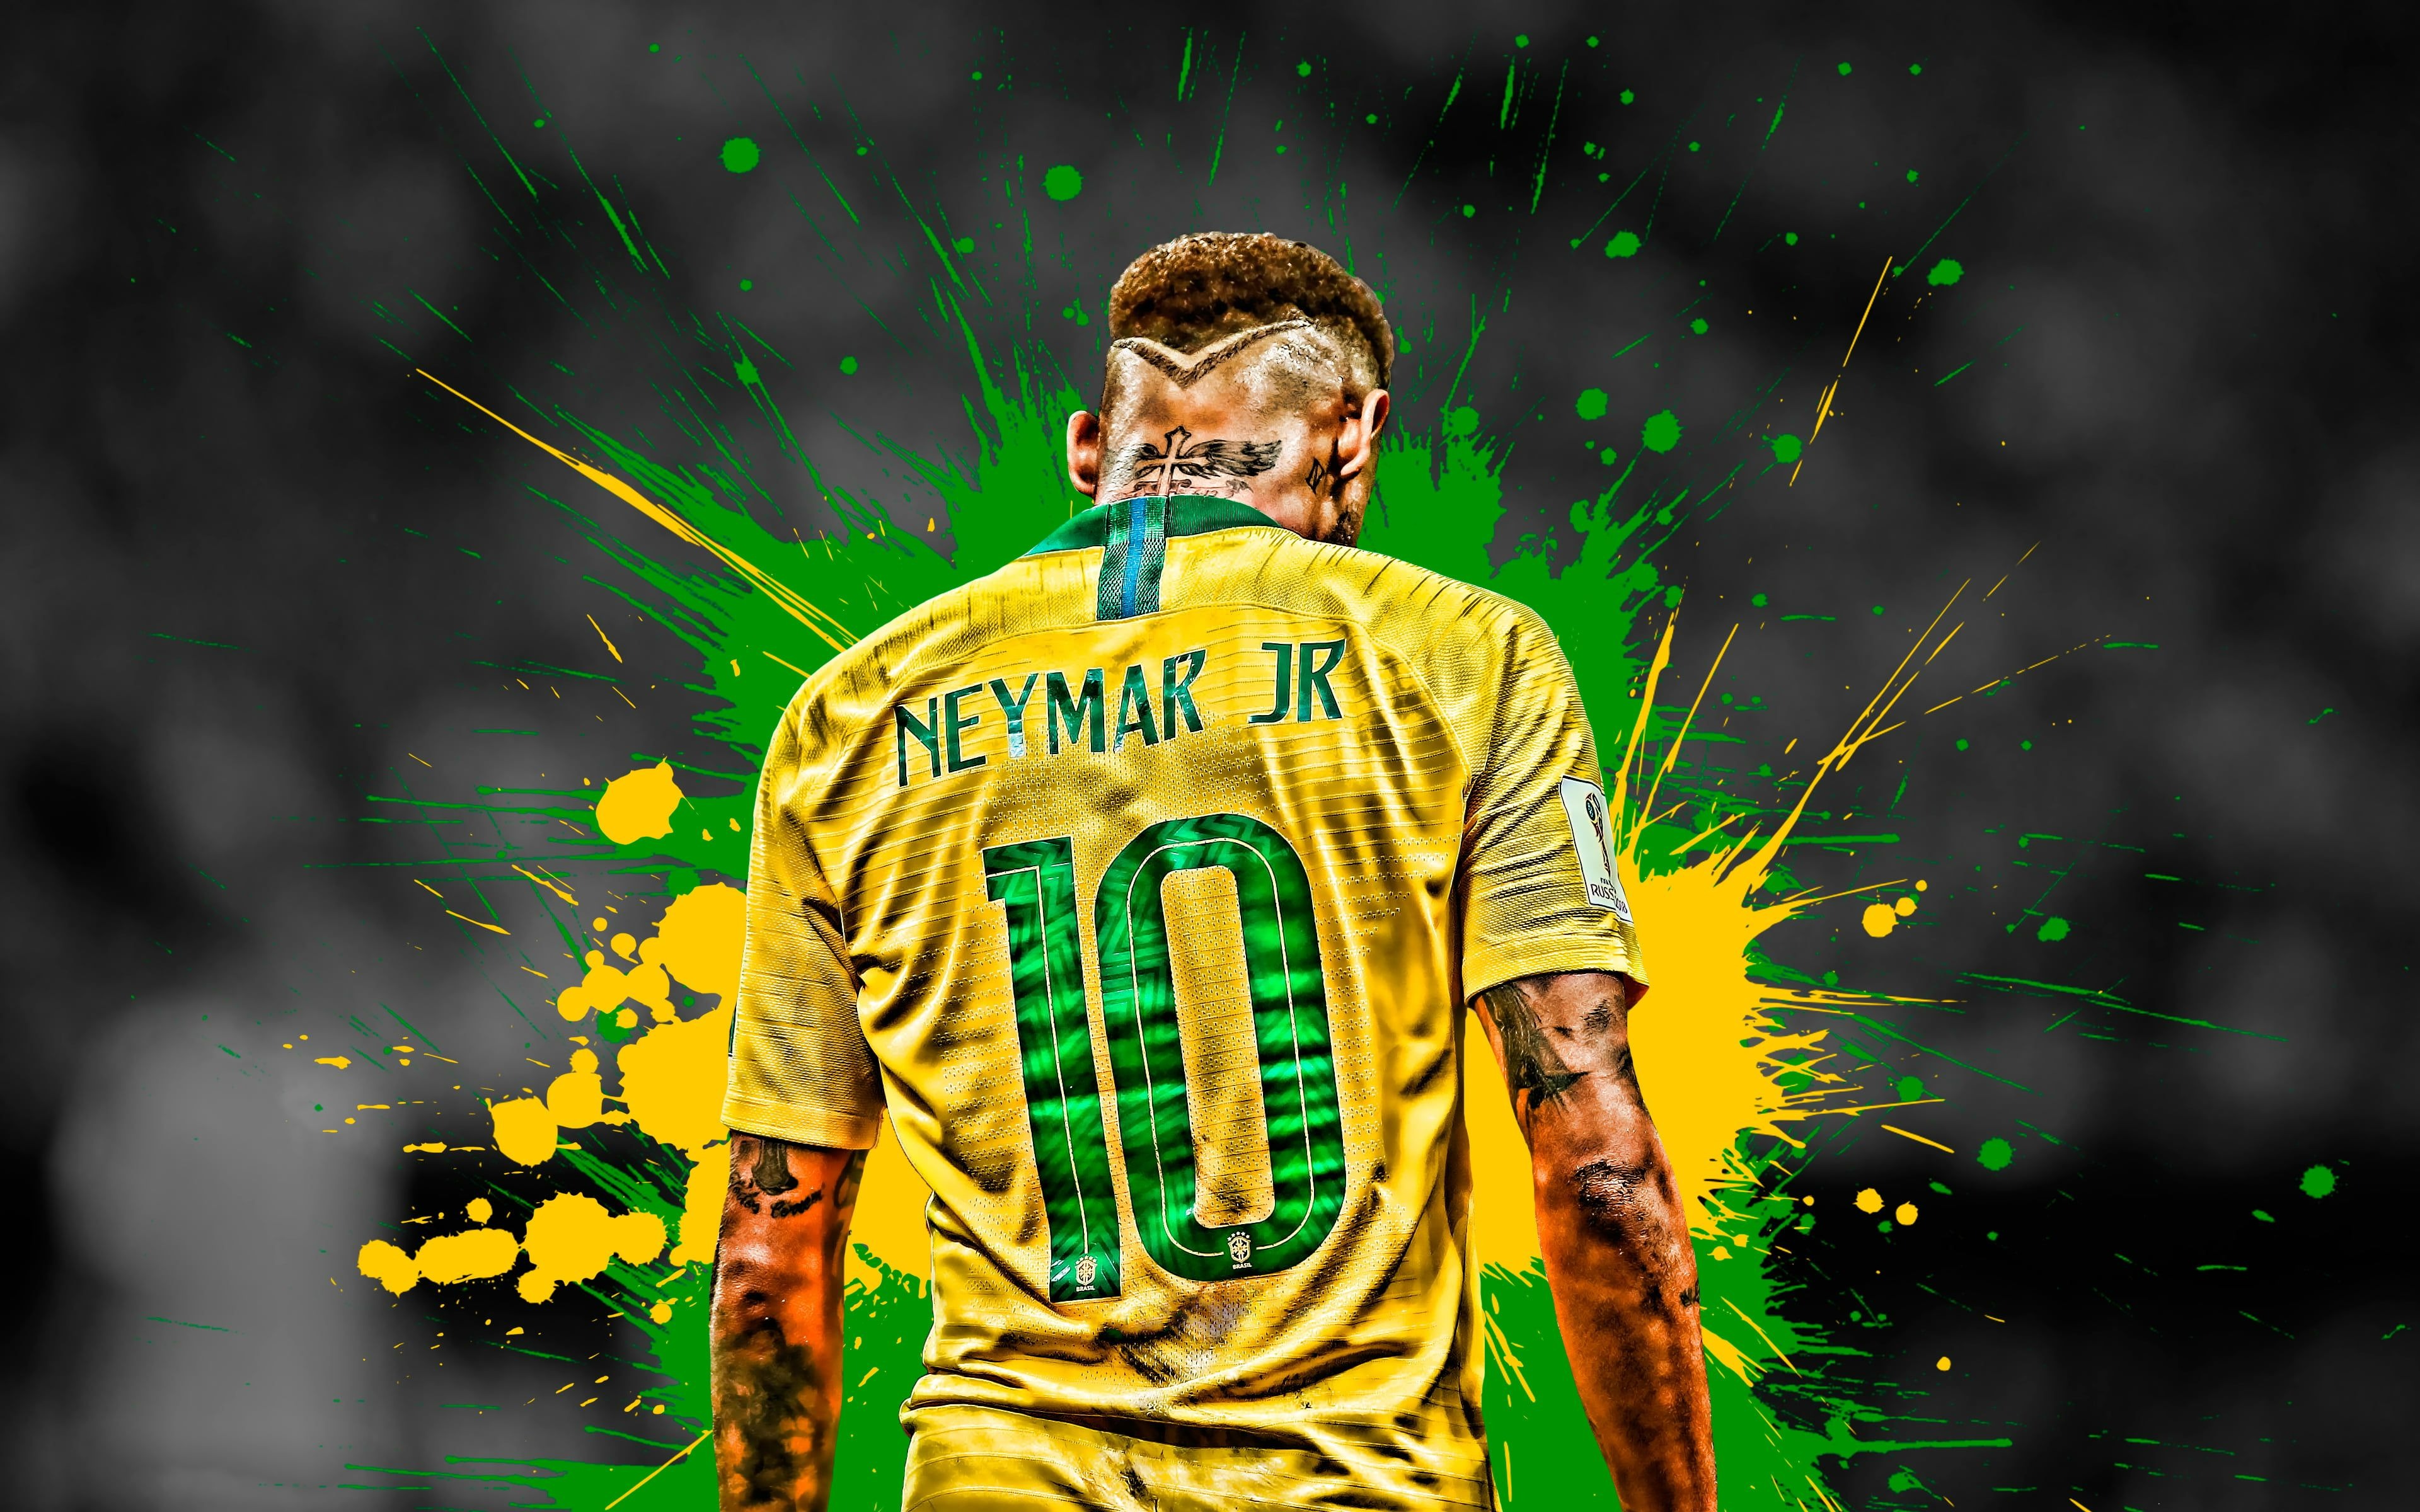 Ảnh Neymar - sự kết hợp hoàn hảo giữa tài năng và nghệ thuật. Với những bức ảnh này, bạn sẽ được tận hưởng cảm giác như được sống trong thế giới bóng đá của Neymar. Nét chạm tuyệt vời cùng sự đổi mới không ngừng nghỉ là những gì bạn sẽ có được khi chiêm ngưỡng những bức ảnh của Neymar.